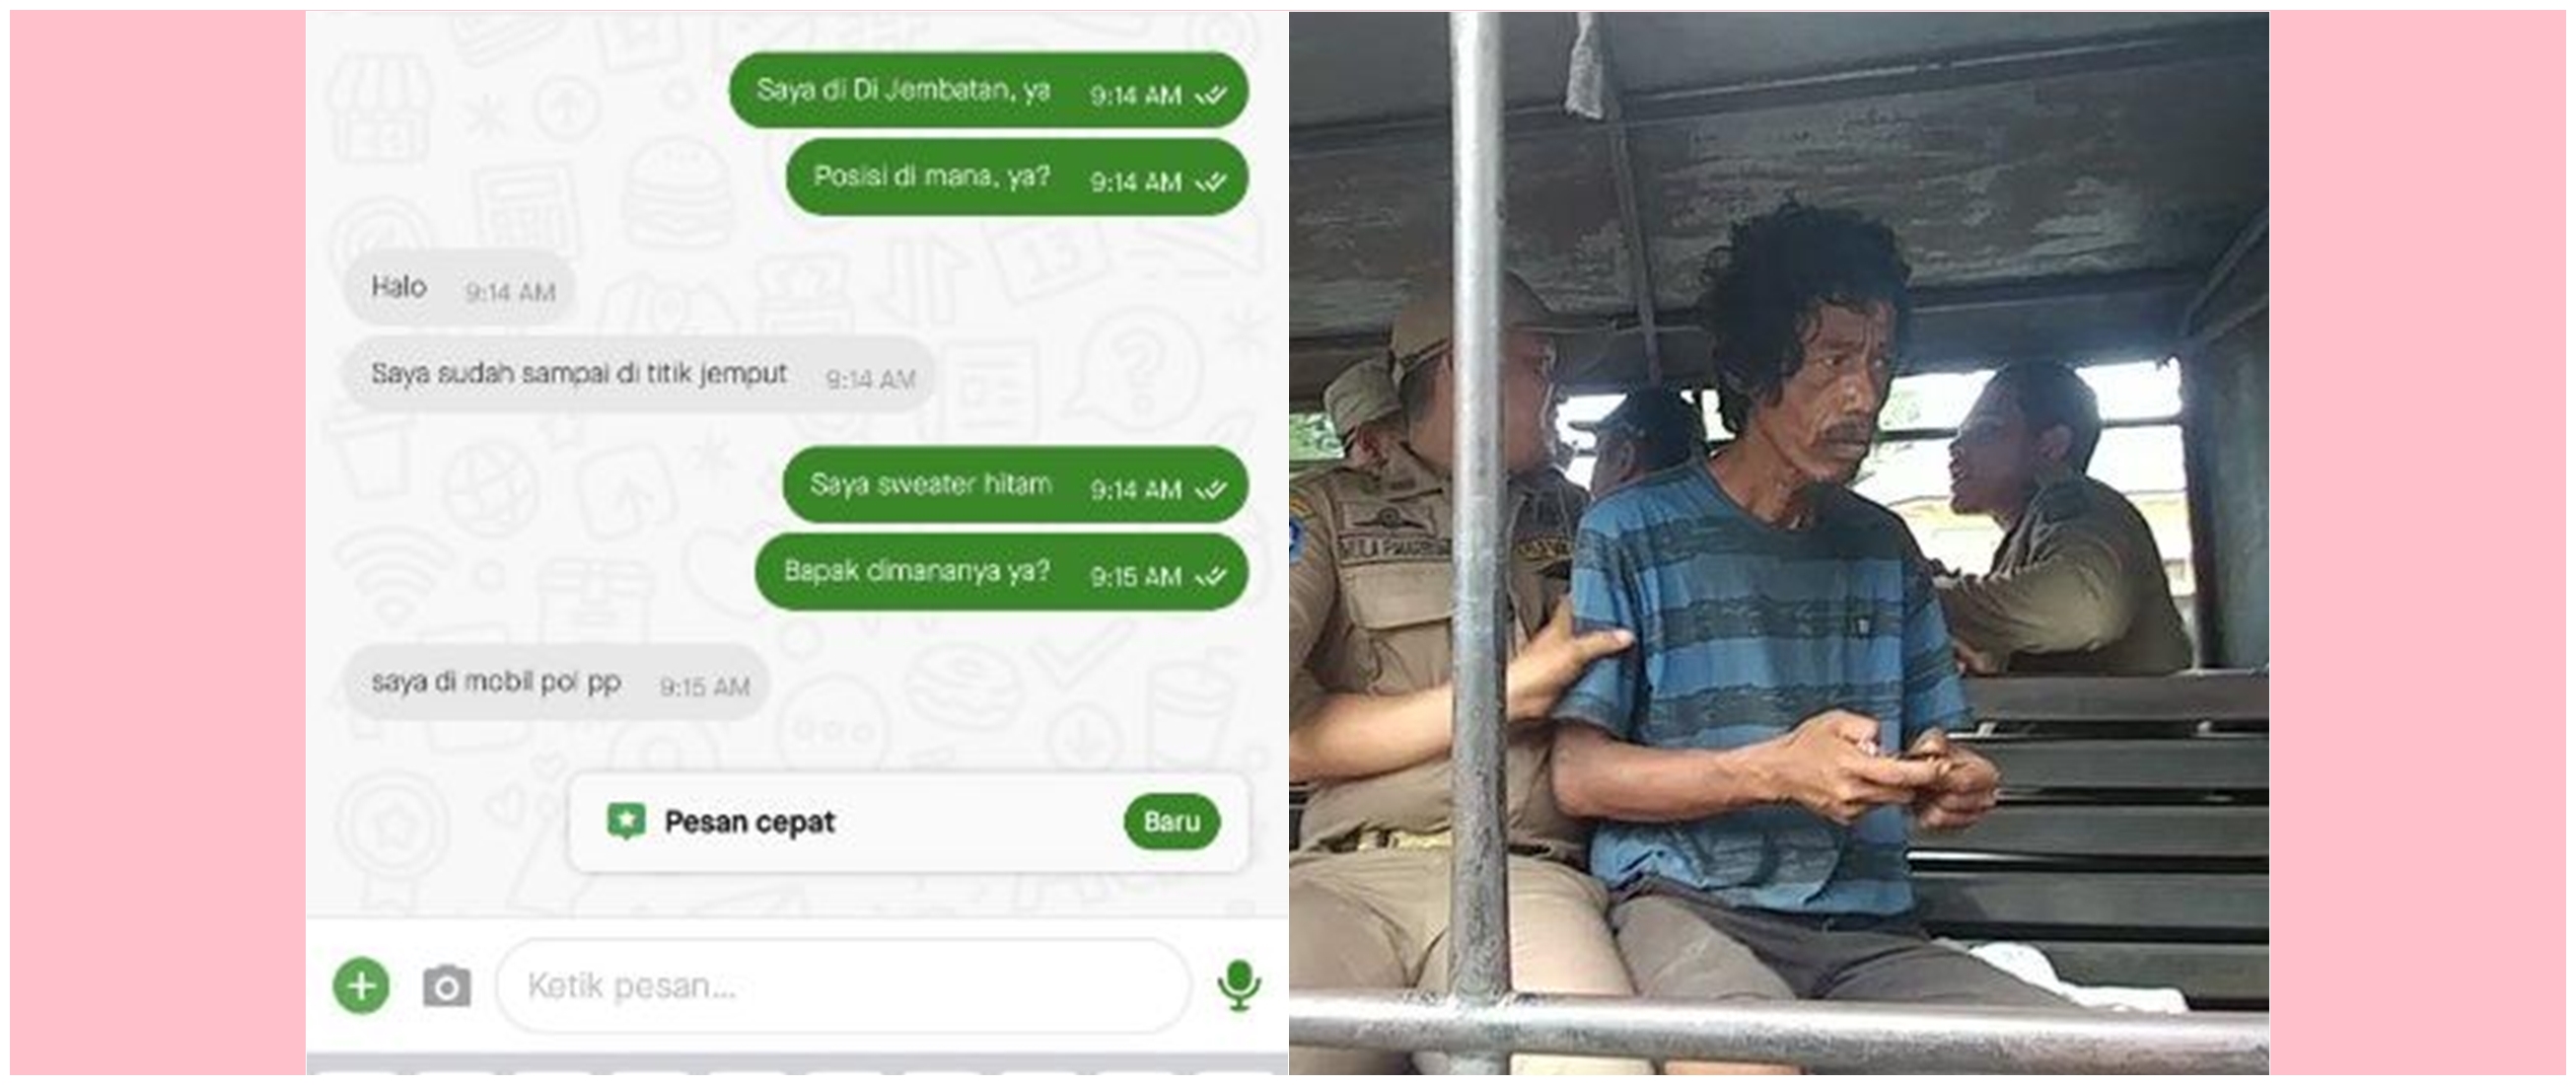 13 Chat lucu driver ojek online saat jemput penumpang ini endingnya bikin bertanya-tanya